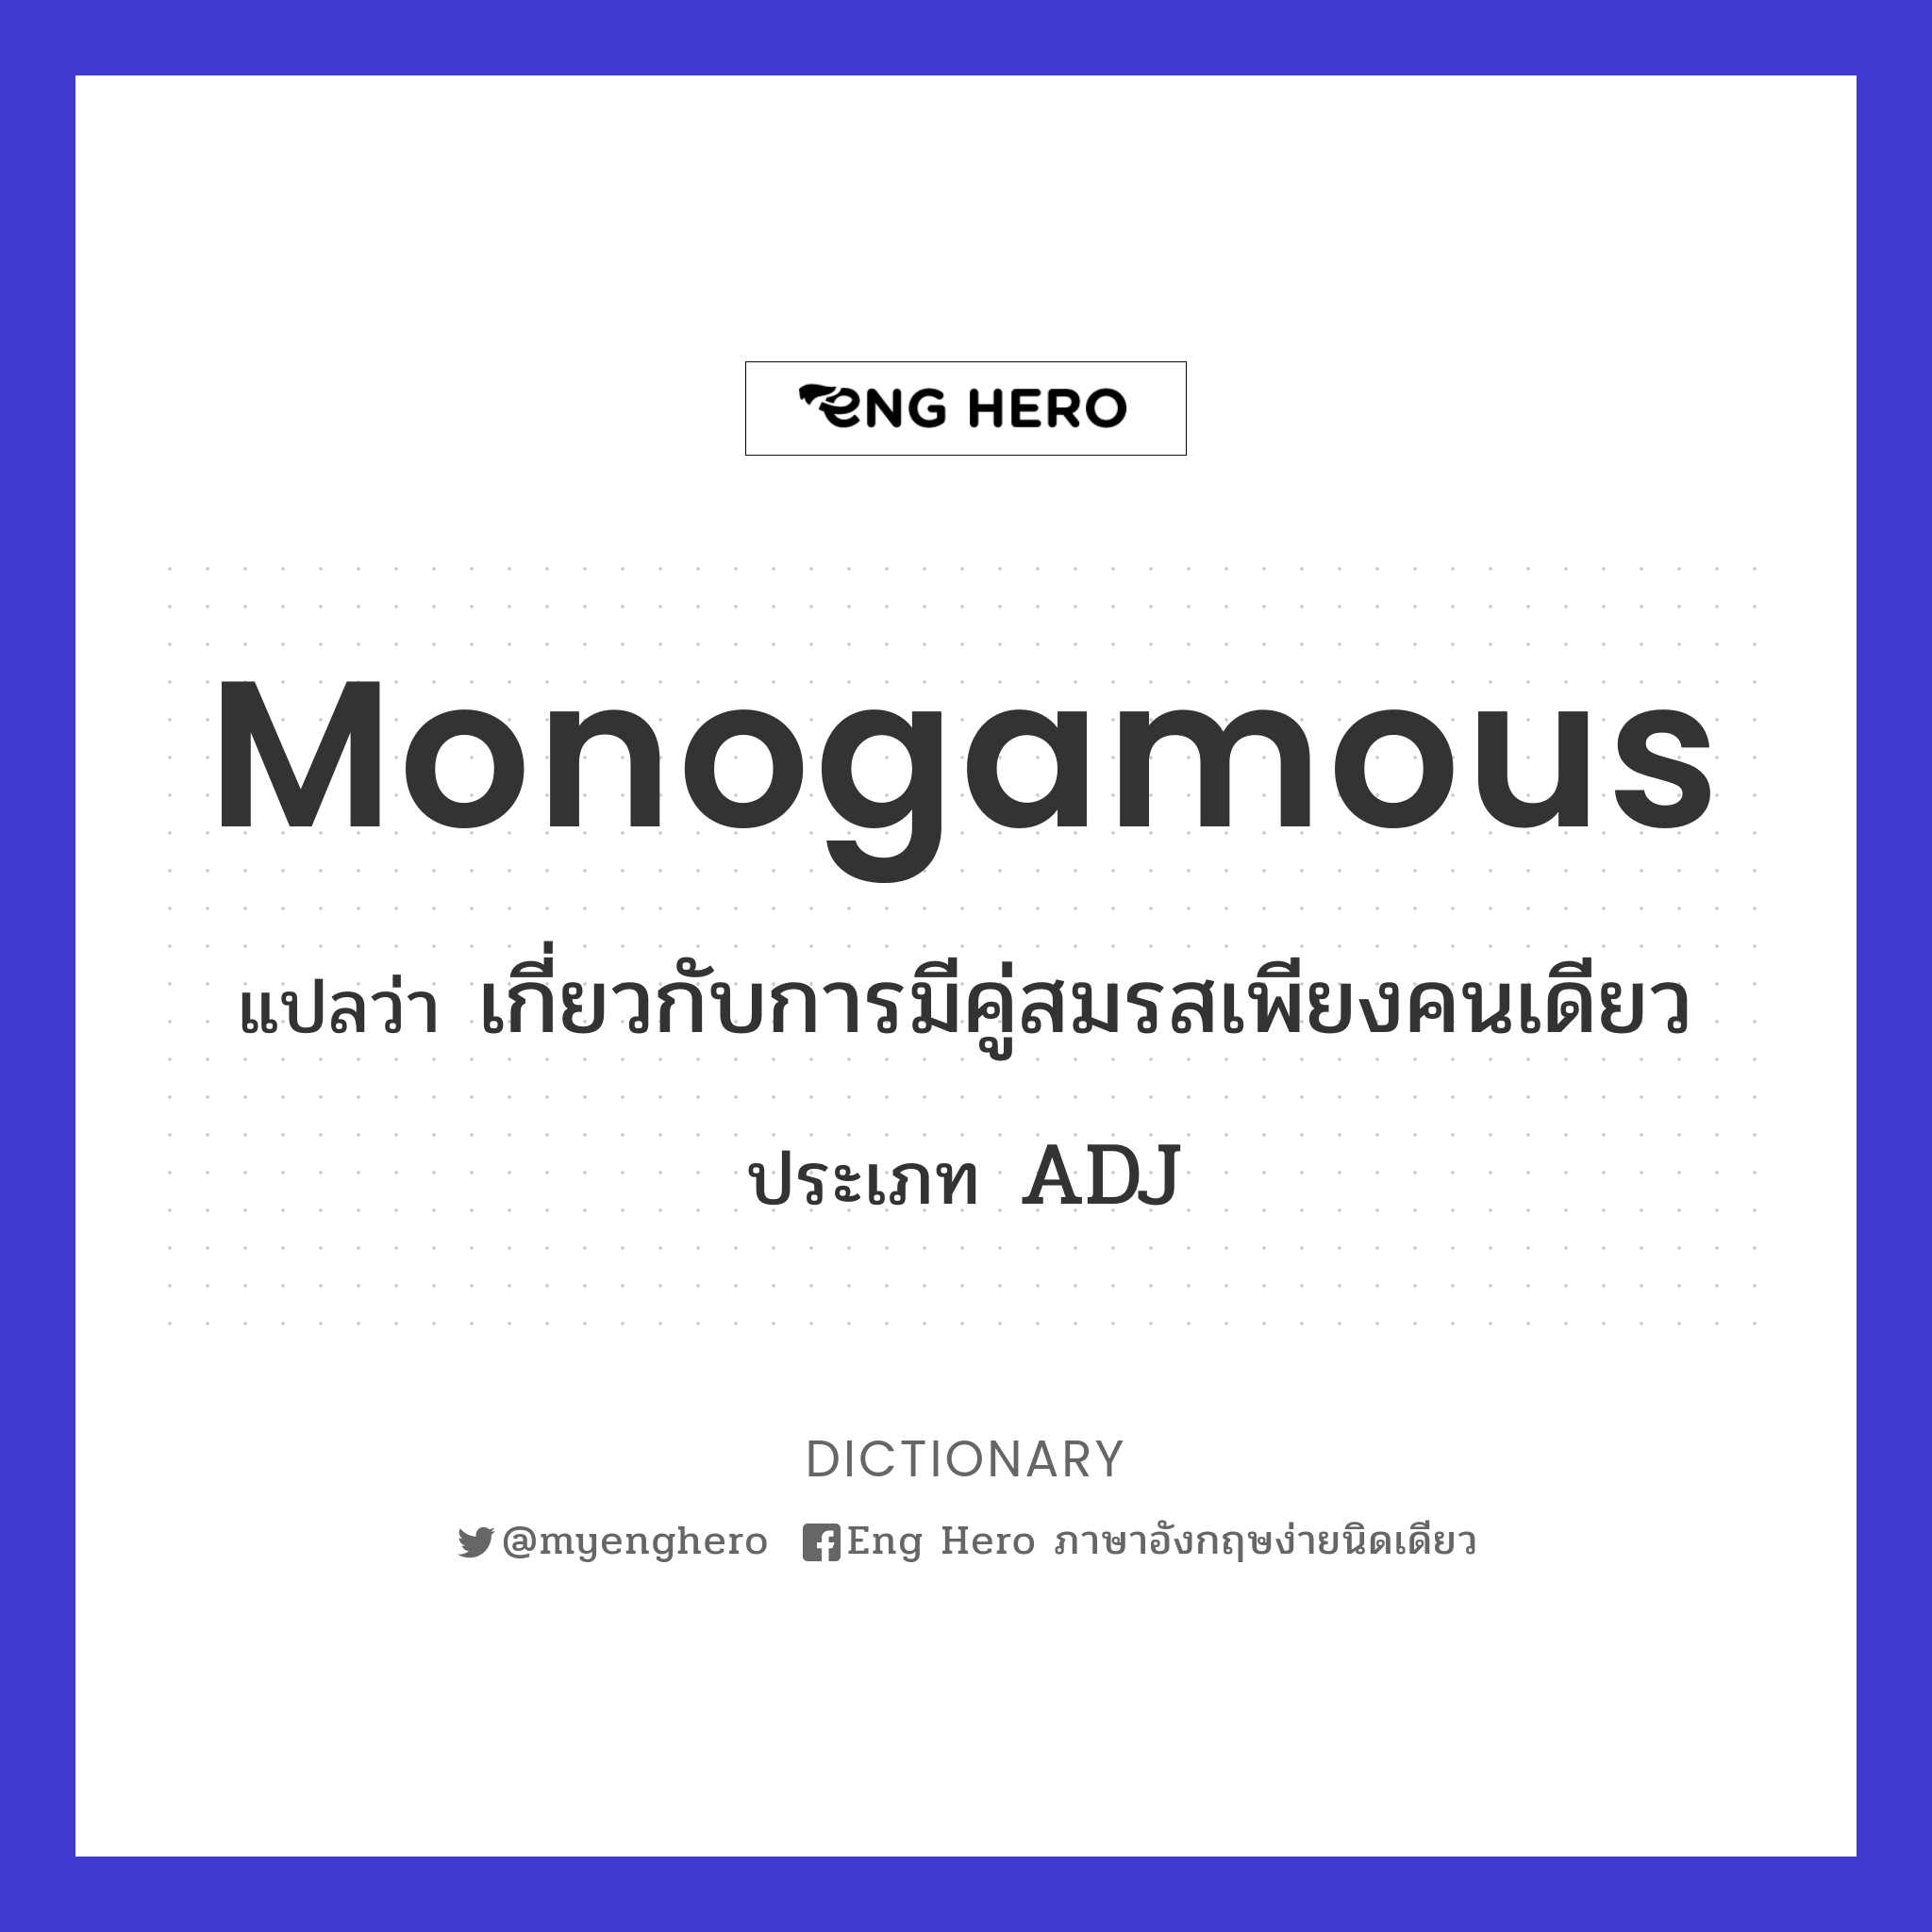 monogamous